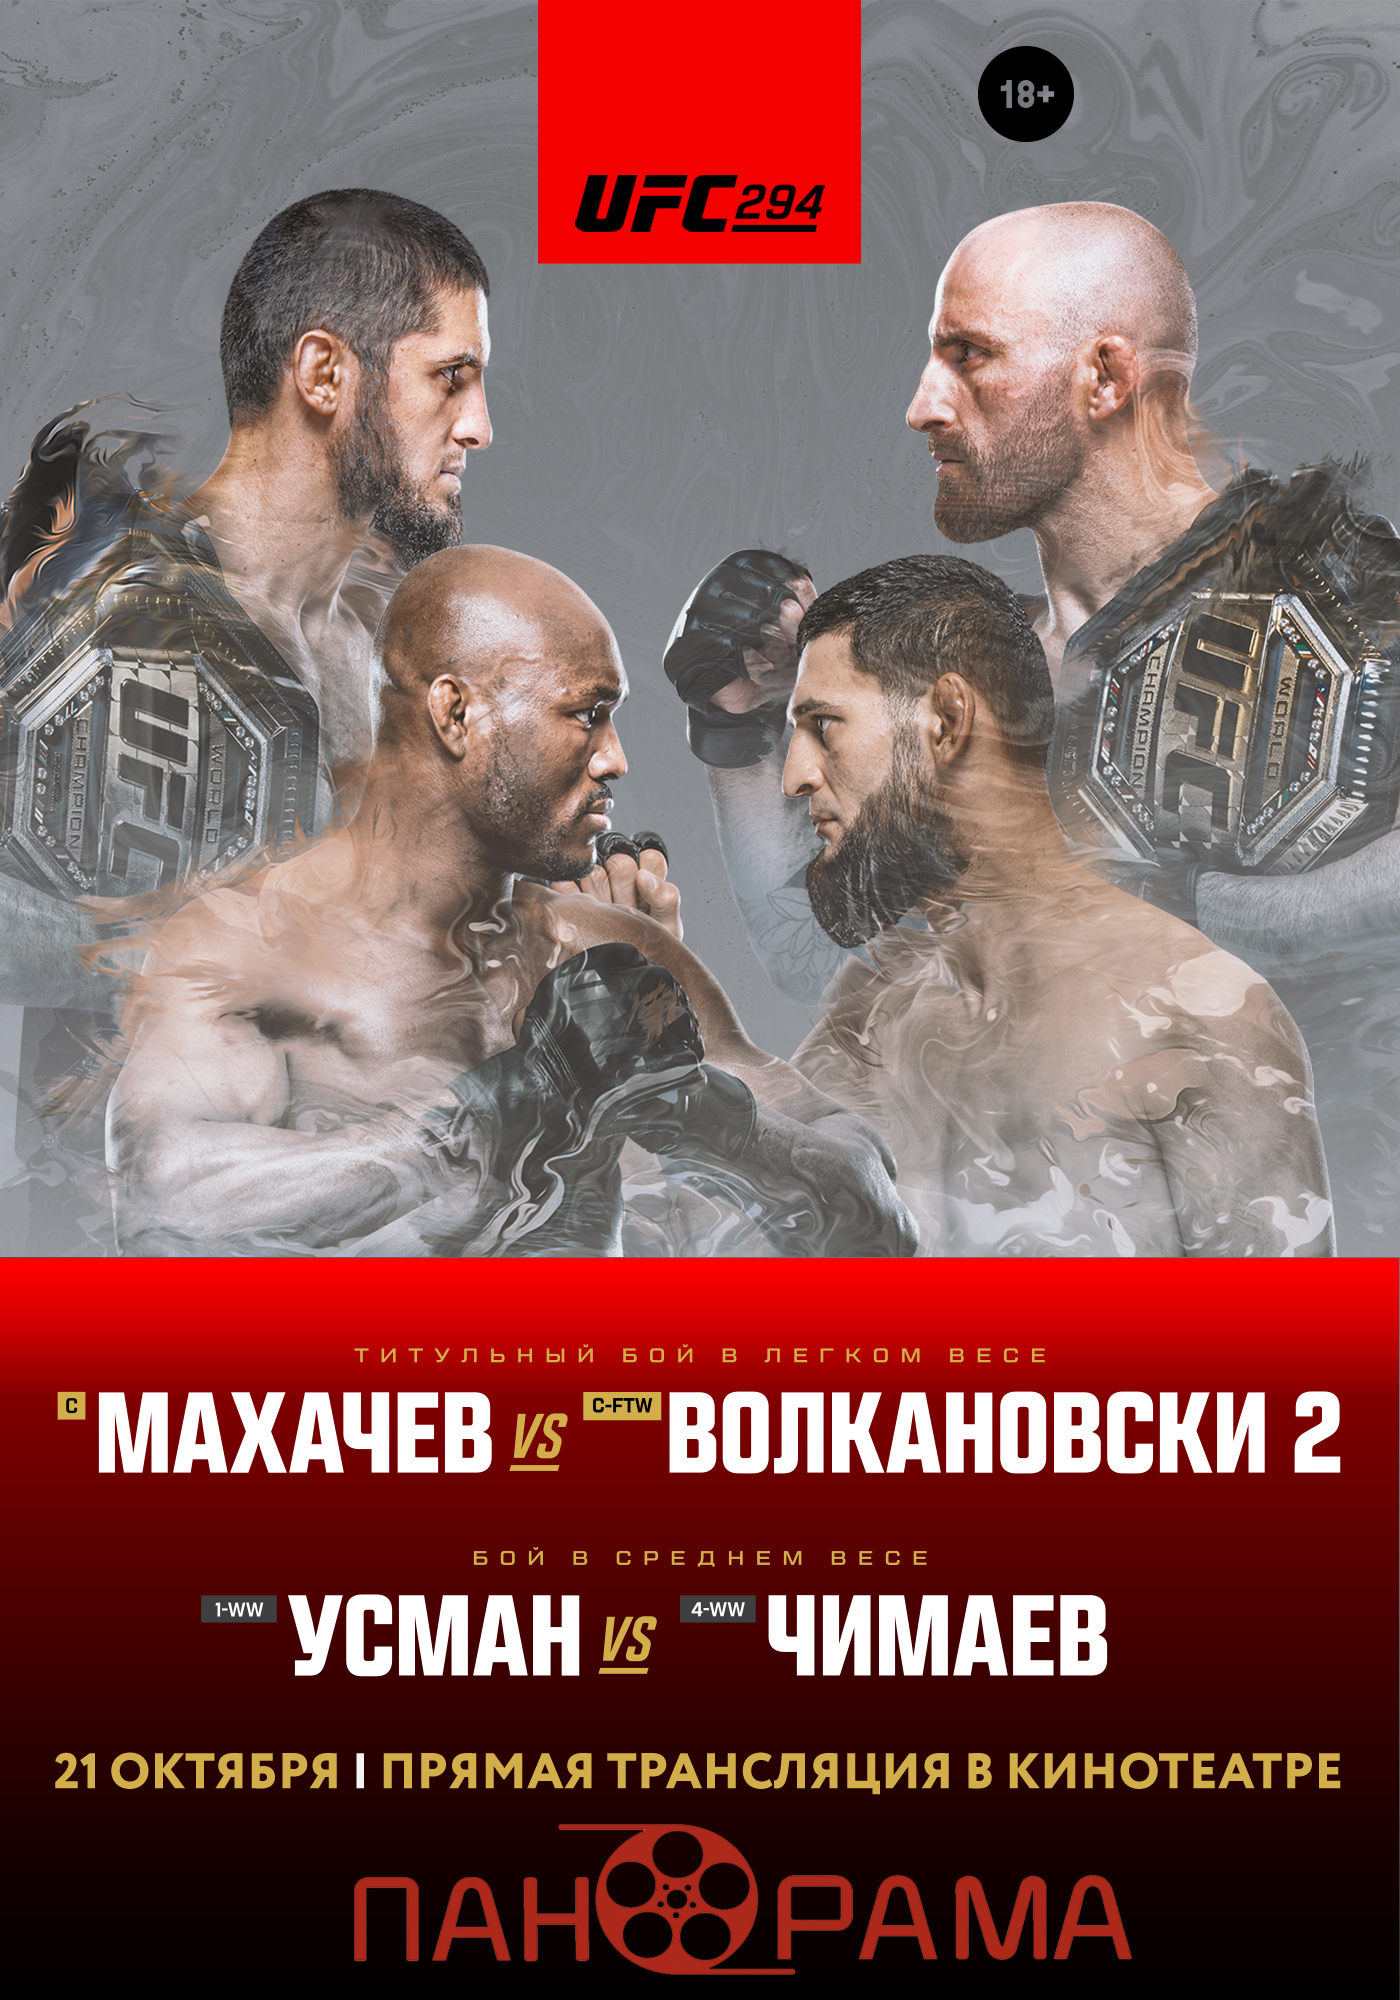 Онлайн-розыгрыш пригласительных билетов трансляцию UFC в кинотеатре «ПАНОРАМА»